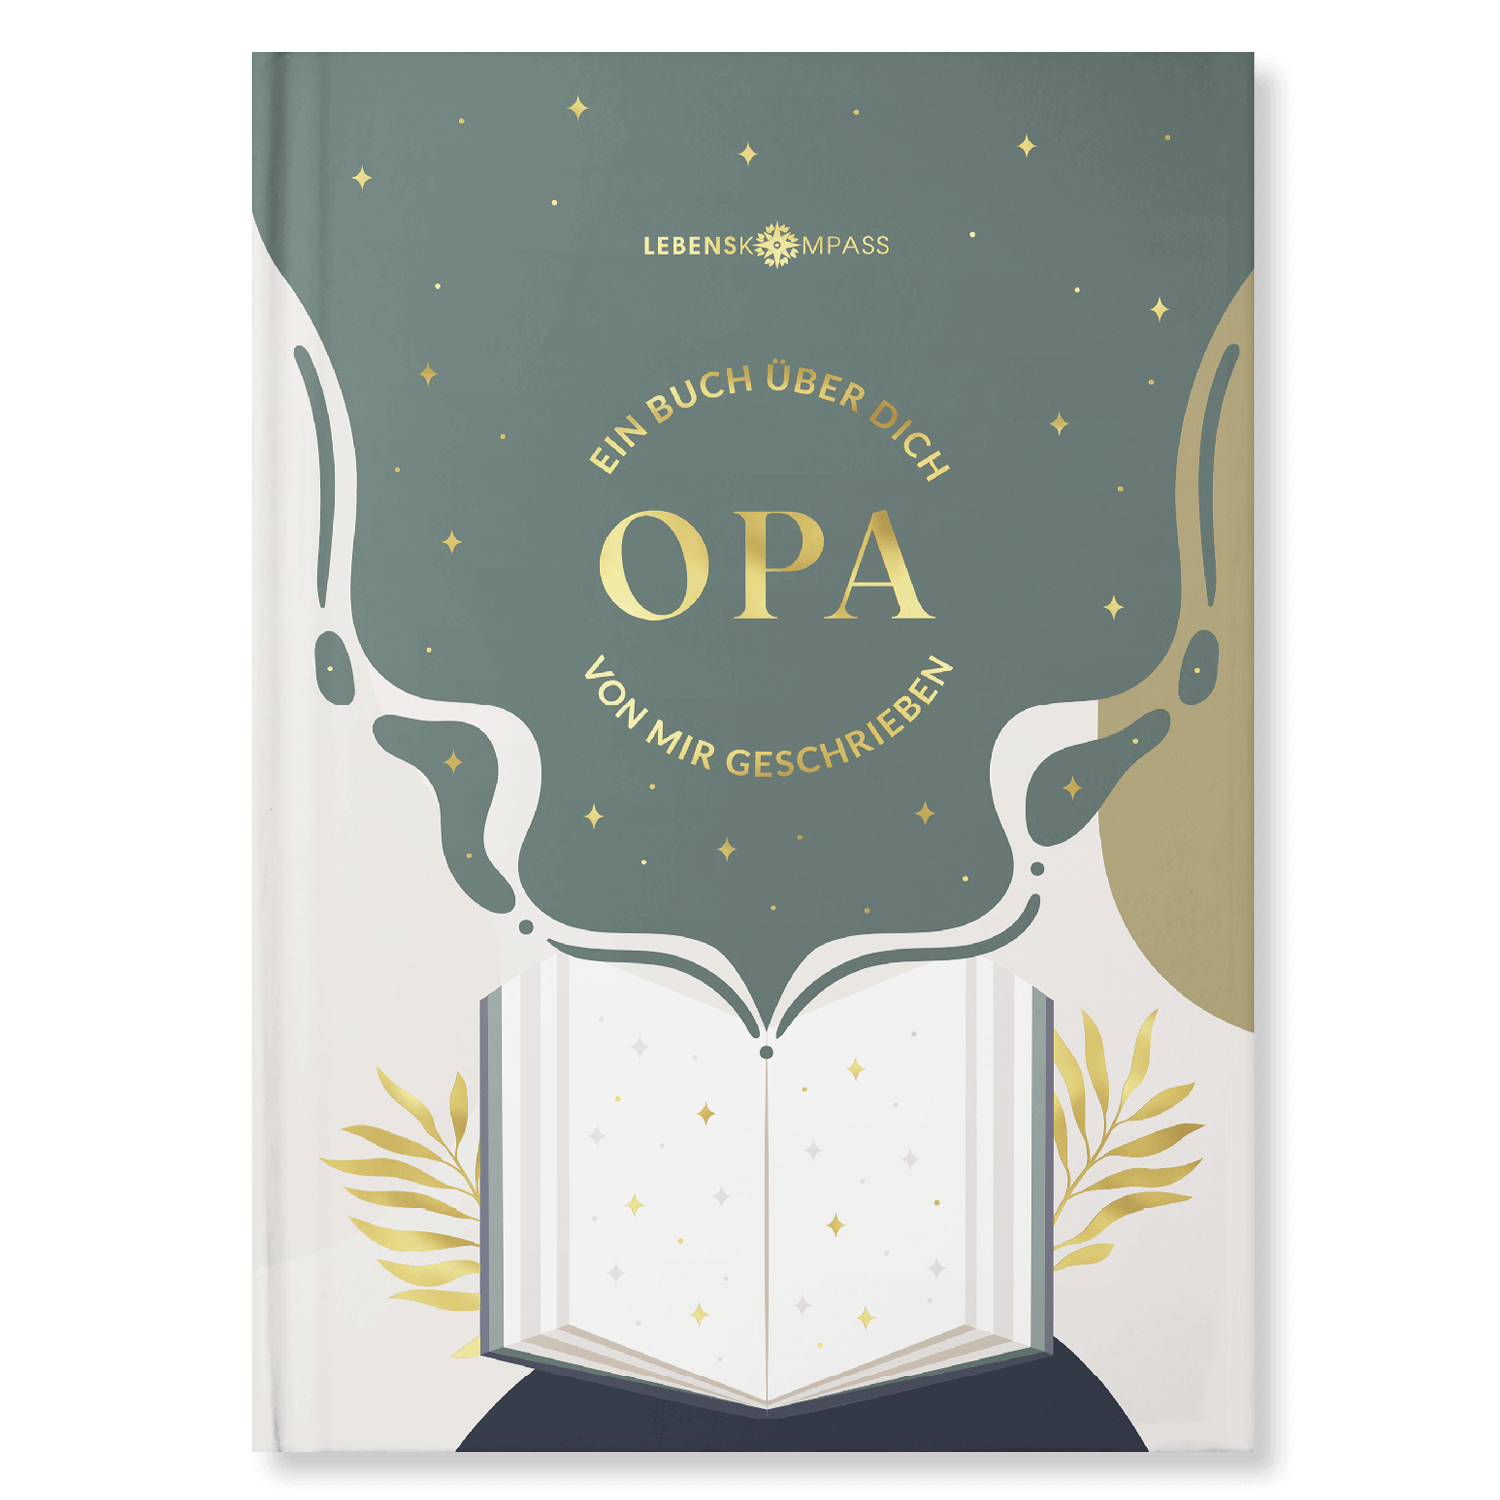 Ein Buch über Dich "Oma & Opa" - Zum Ausfüllen und Verschenken